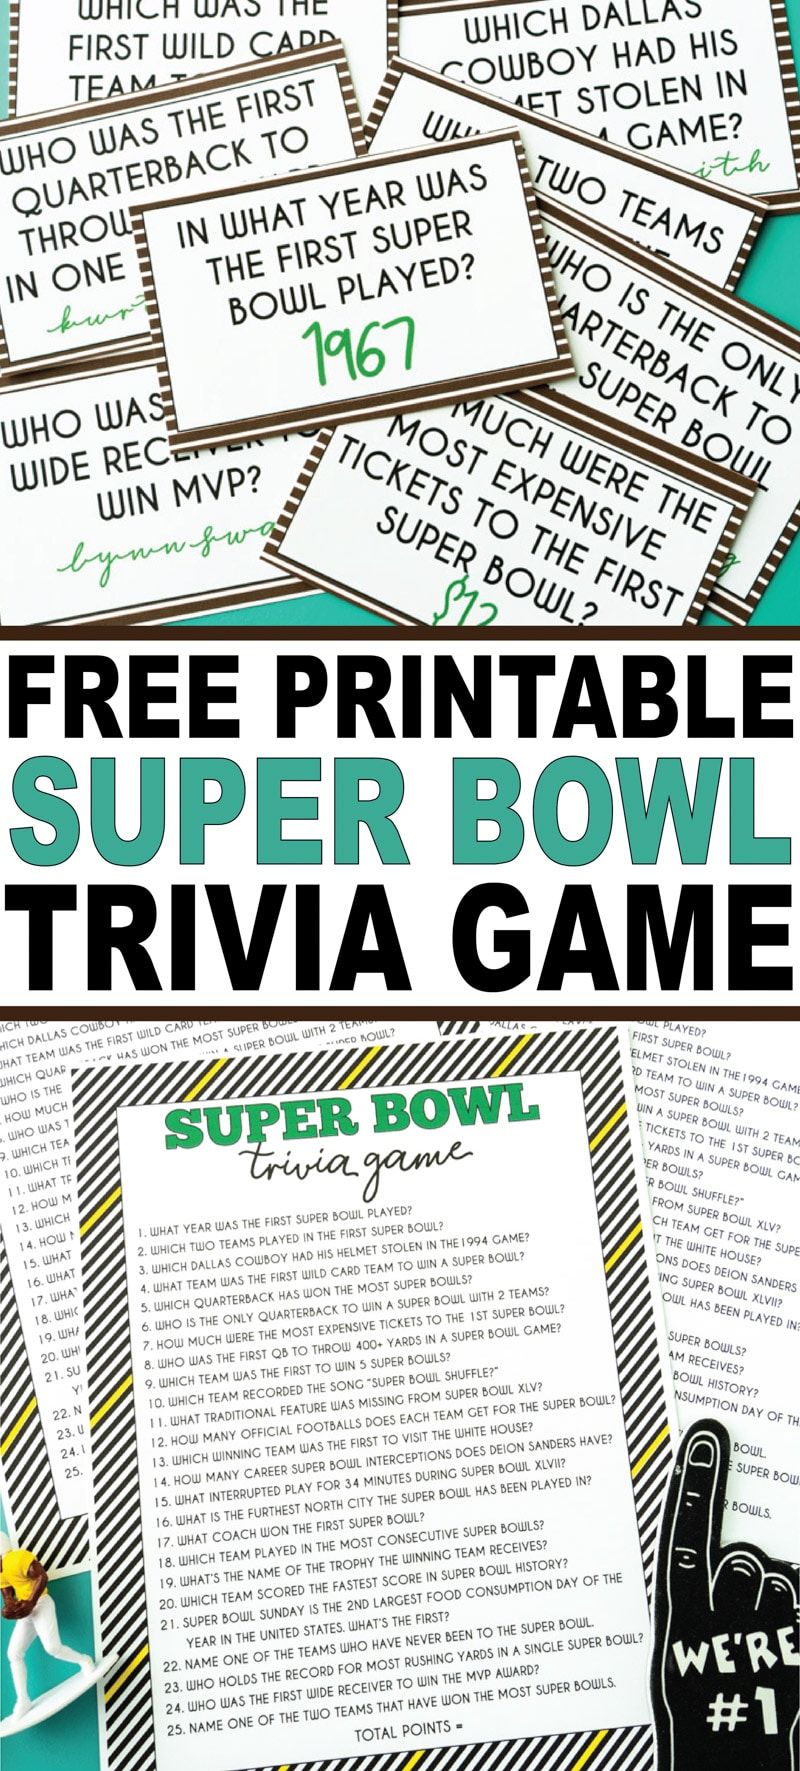 ¡Un divertido juego de preguntas del Super Bowl con una versión imprimible del juego y tarjetas imprimibles para preguntar antes y después del juego! ¡Uno de los mejores juegos de fiesta del Super Bowl!